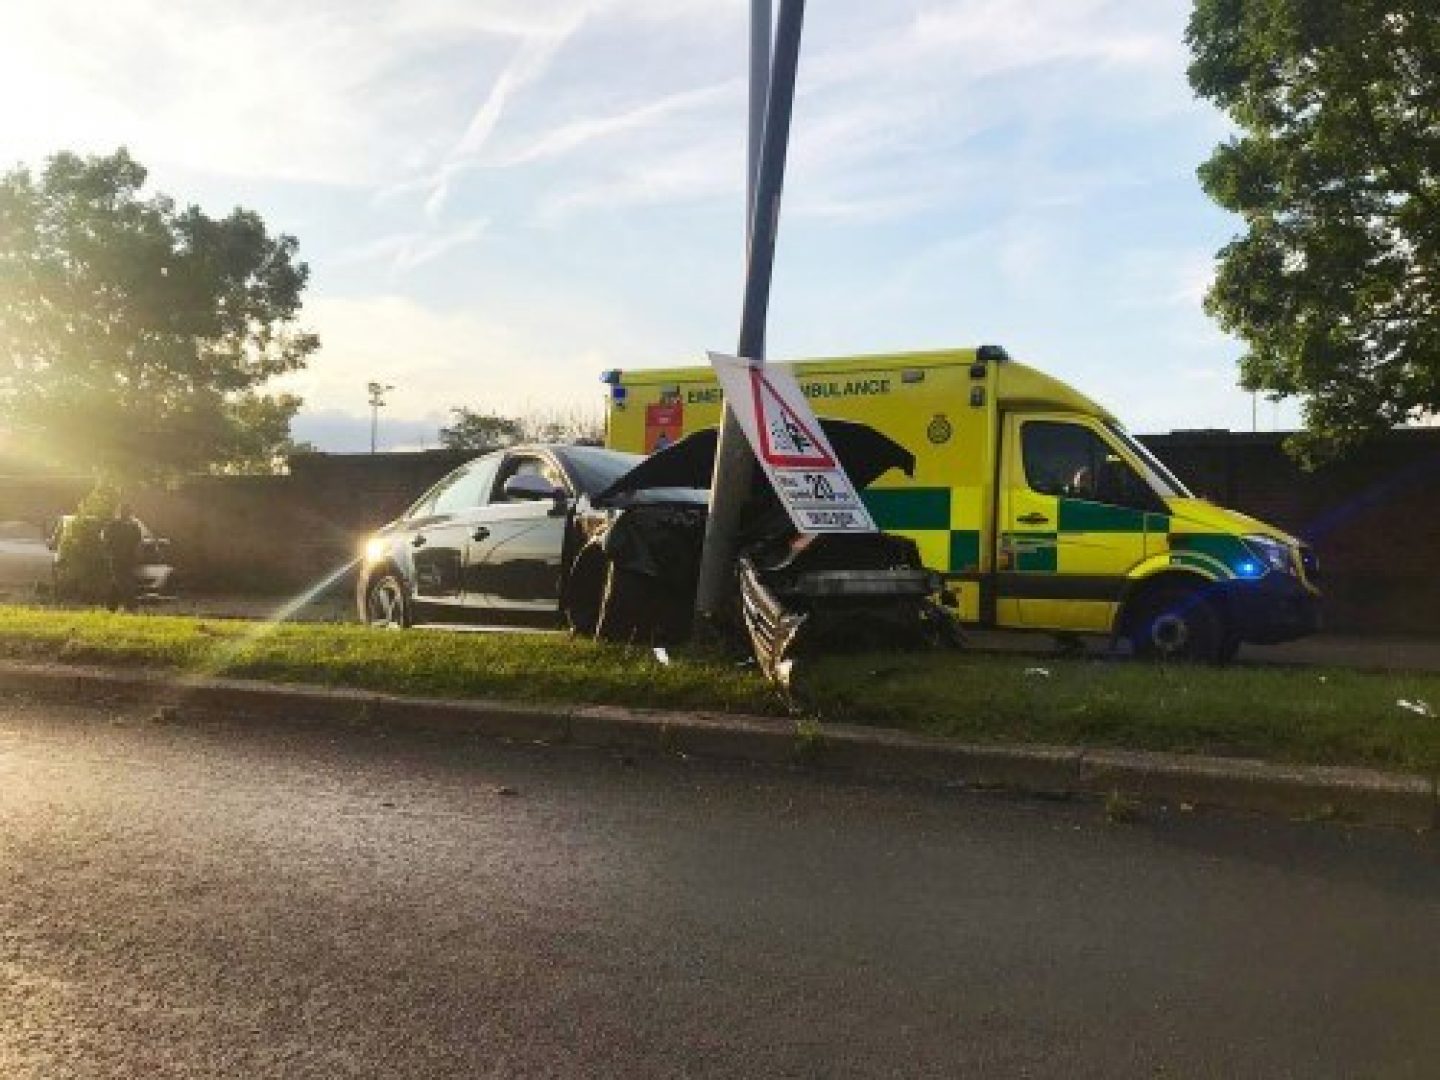 Car crash scene ambulance